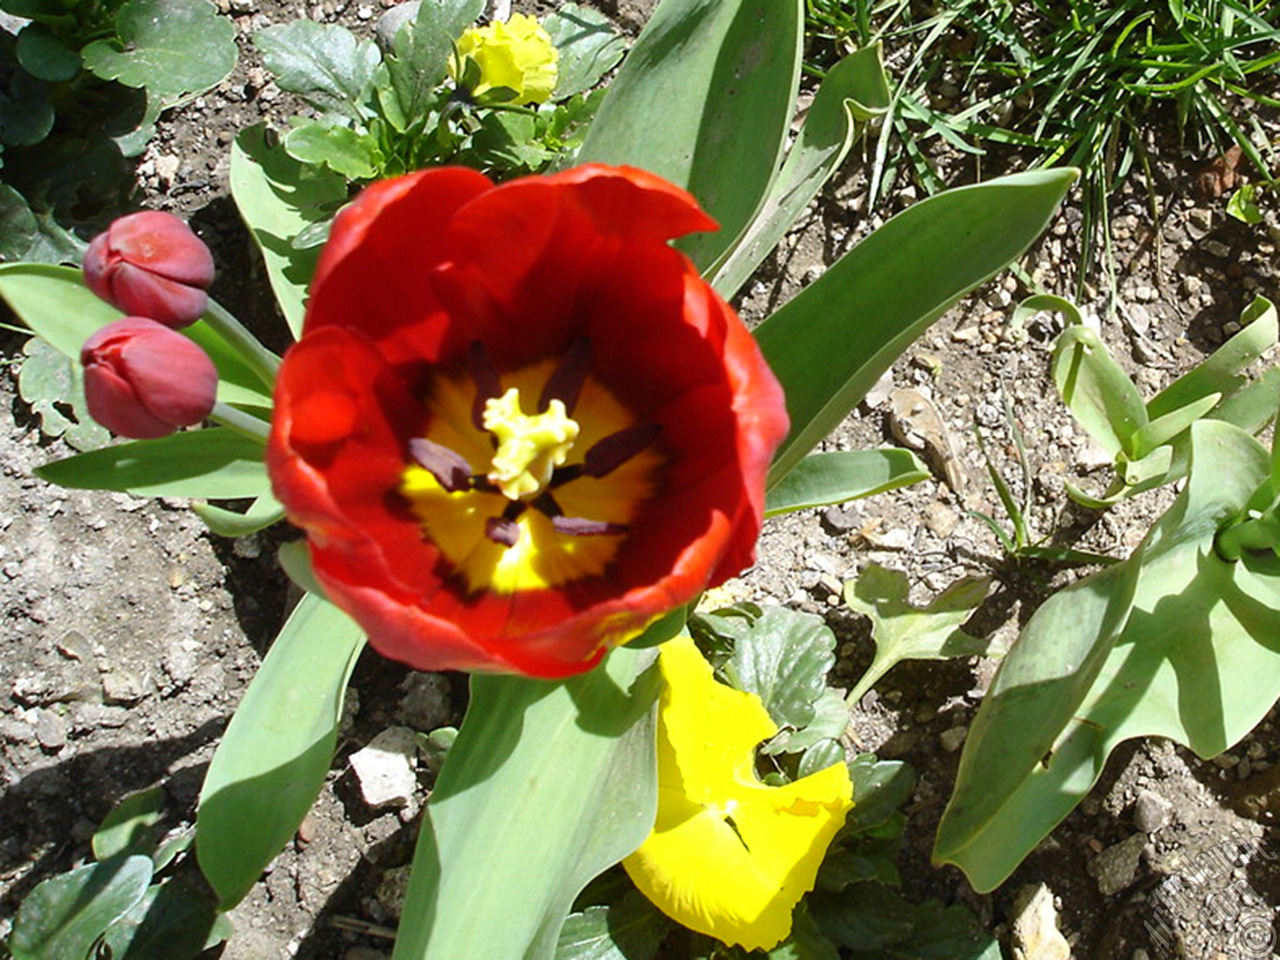 Red Turkish-Ottoman Tulip photo.
